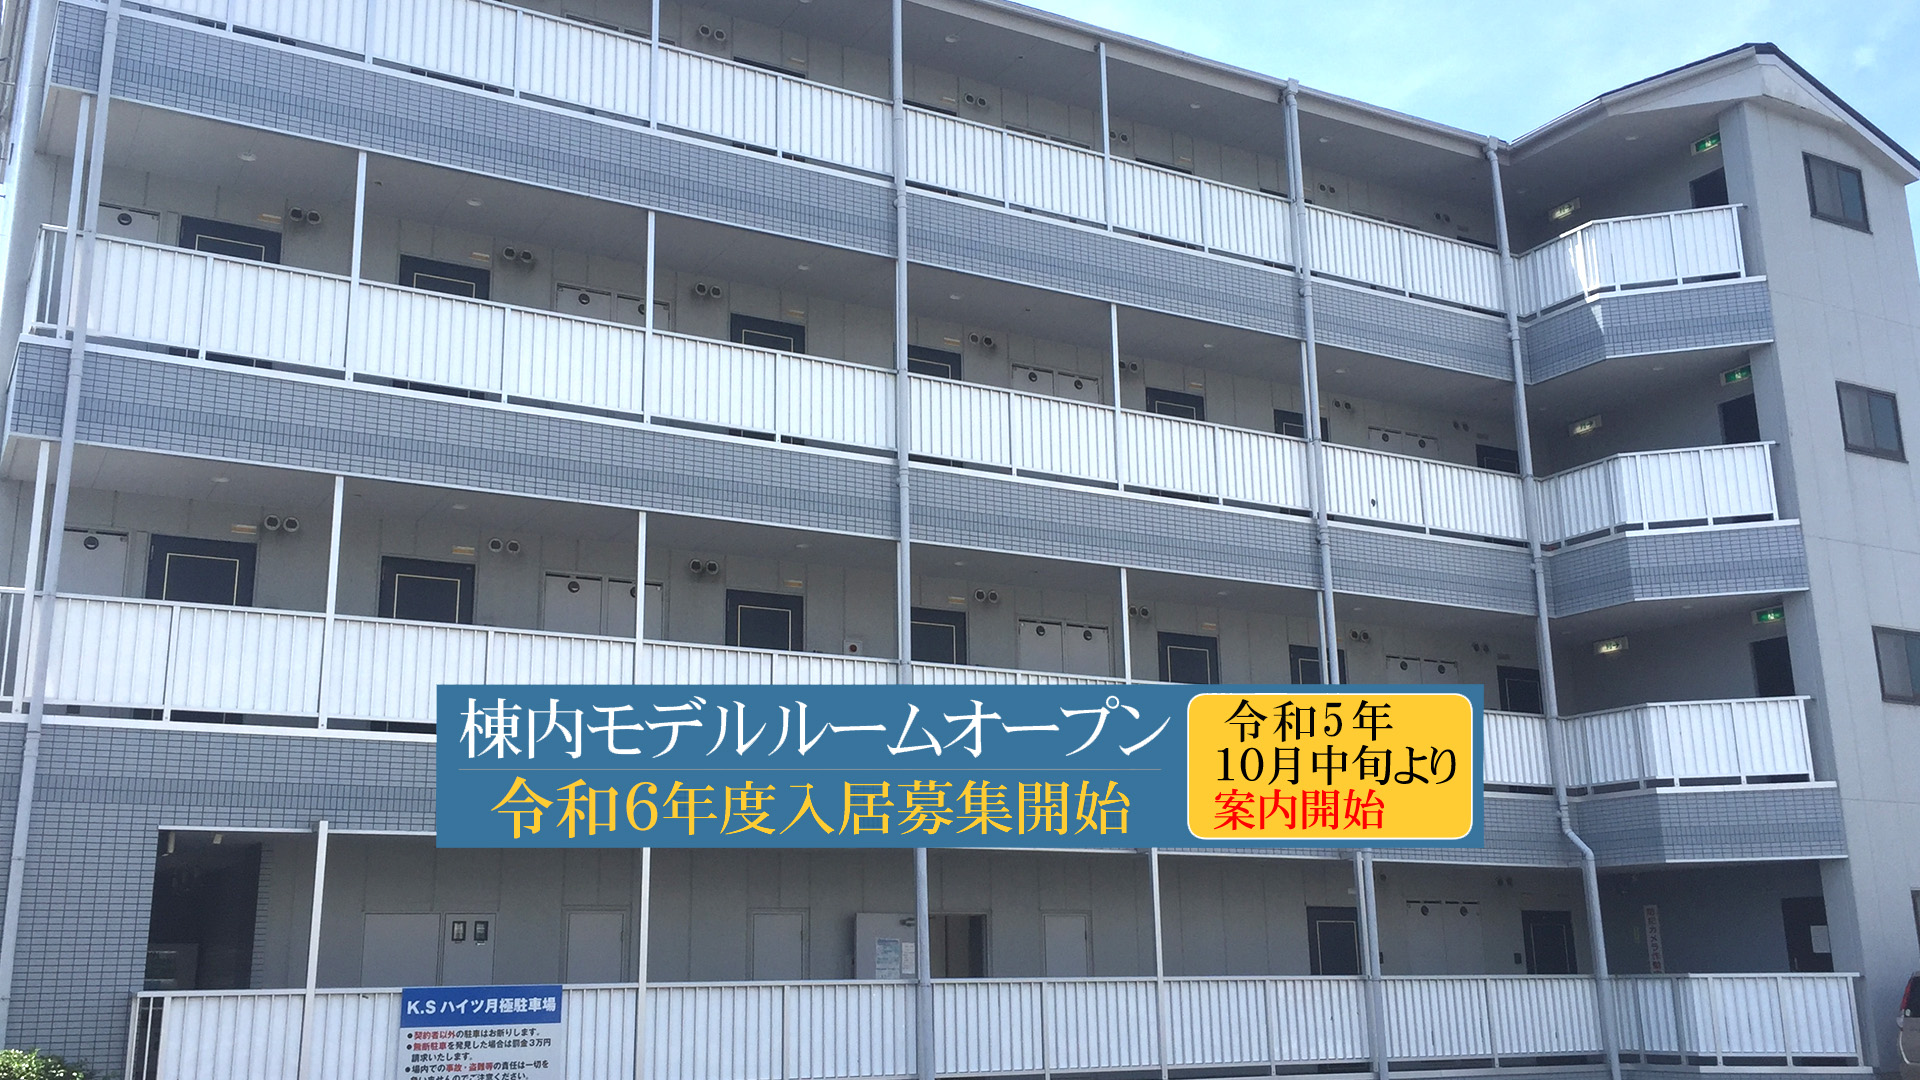 和泉中央駅徒歩15分・桃山大学徒歩10分の広めの公認（指定）学生マンションはKSハイツ